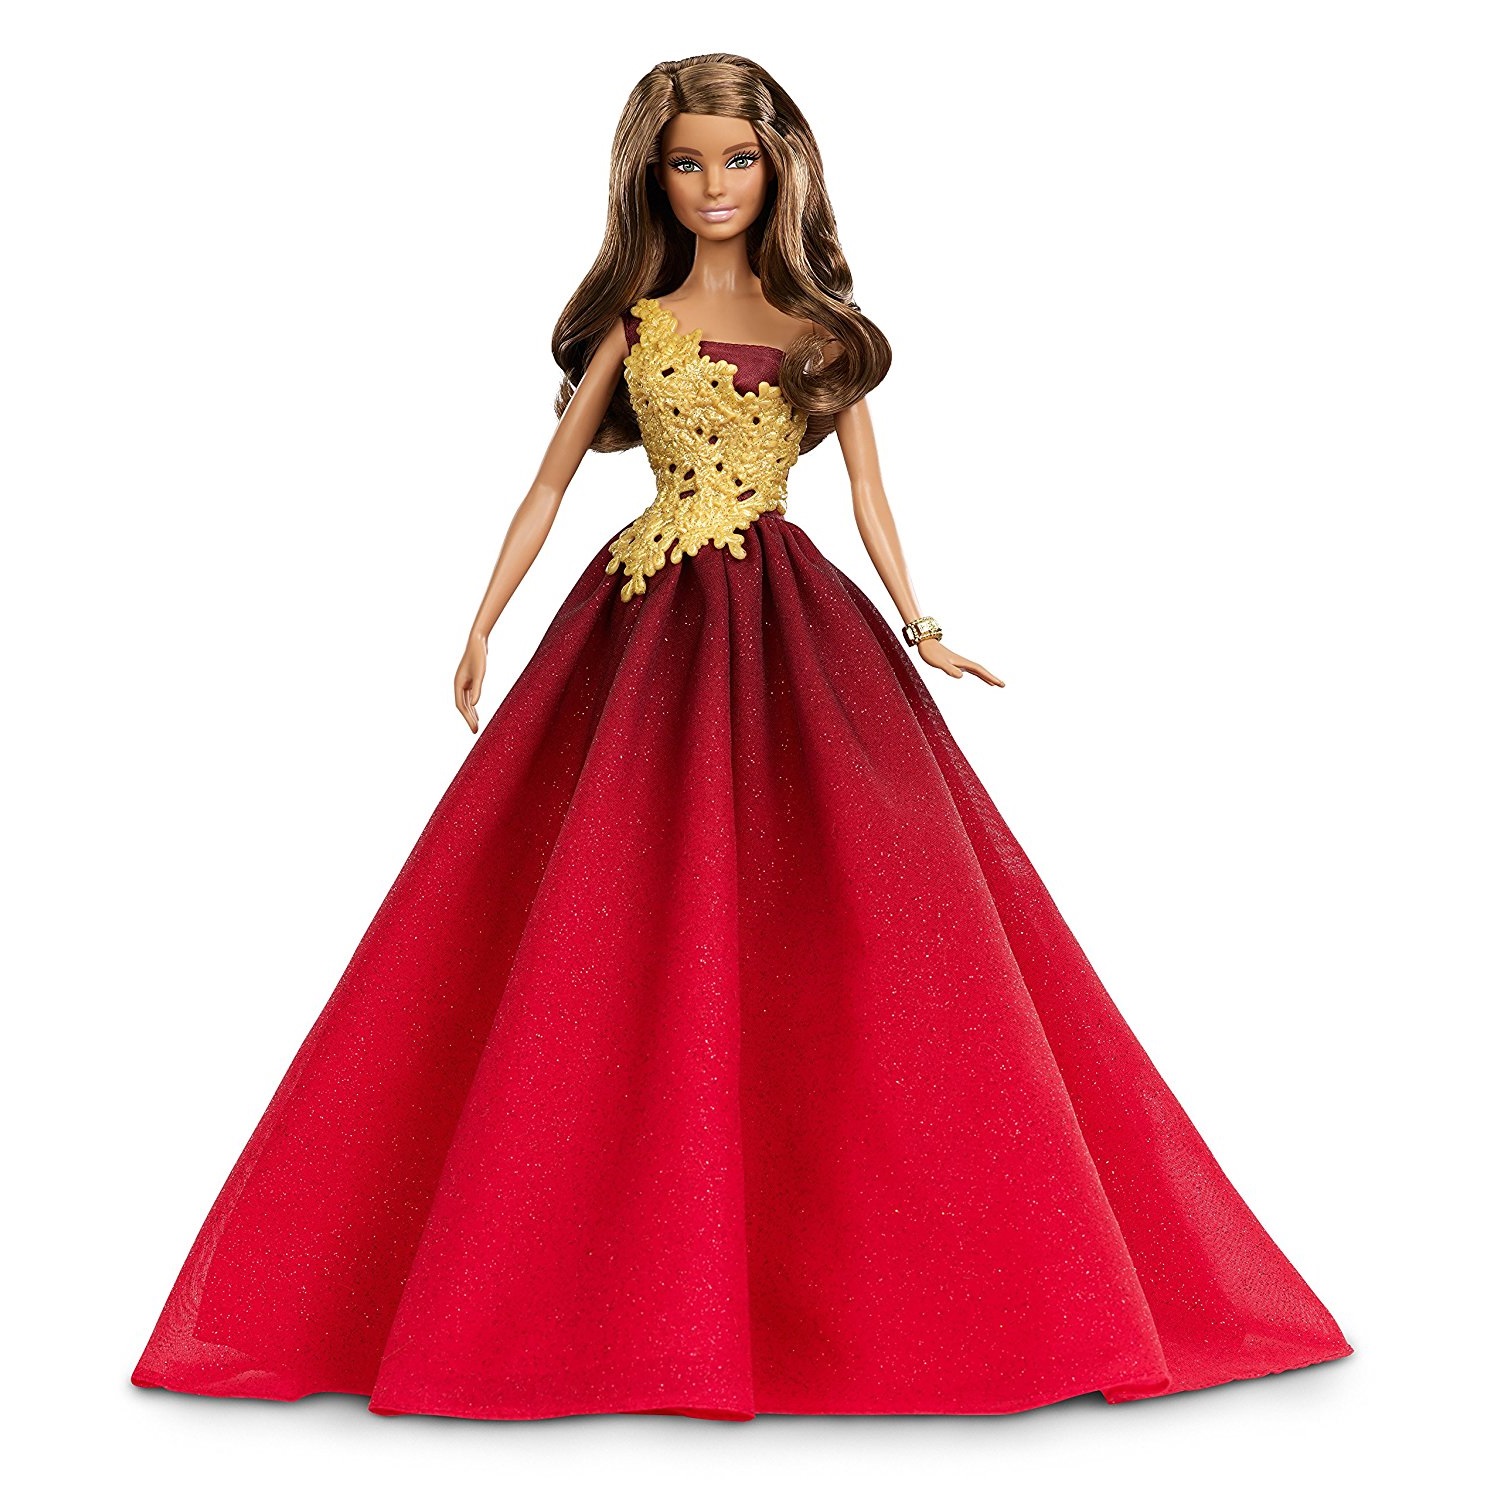 Кукла Барби (Barbie 2016 Holiday Doll) - Праздник 2016 (Латиноамериканка). 